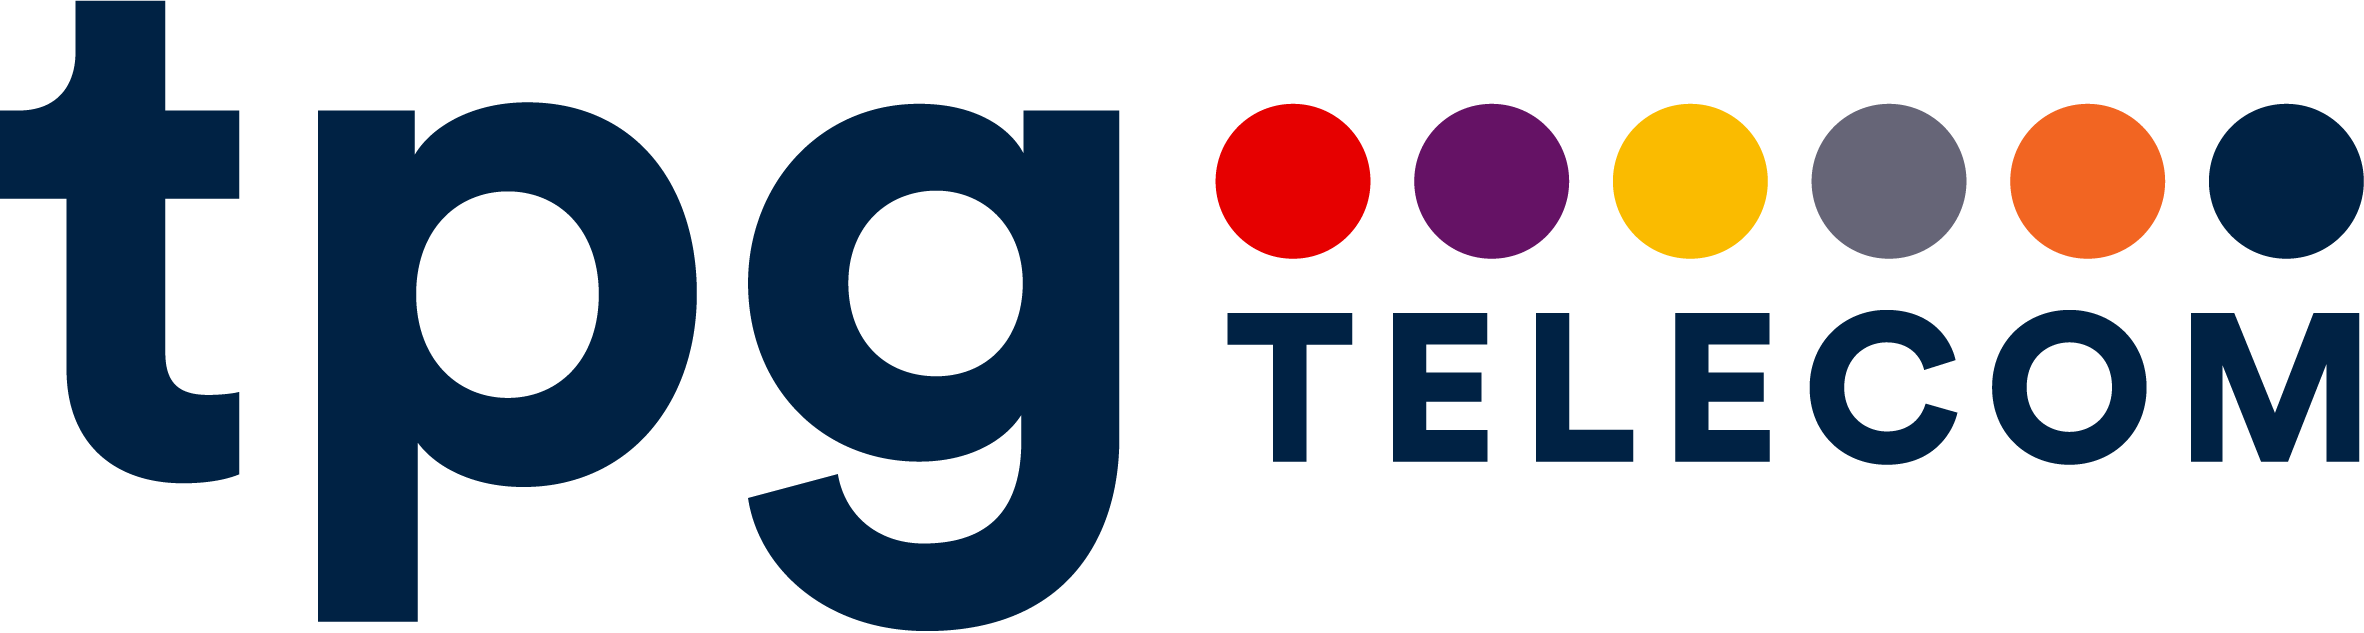 TPG telecom logo